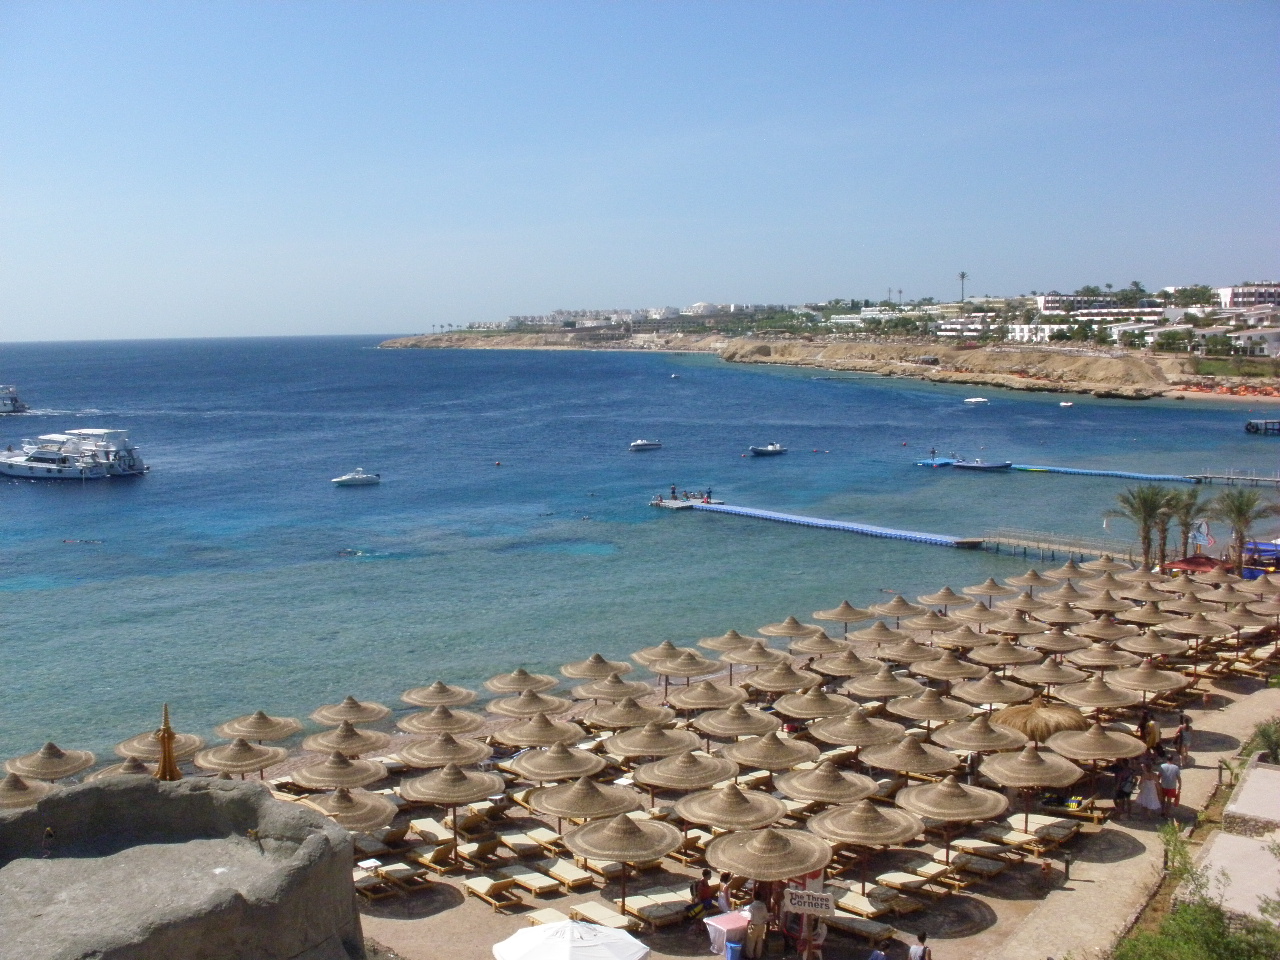 Fotografie cu Pyramisa Beach - locul popular printre cunoscătorii de relaxare